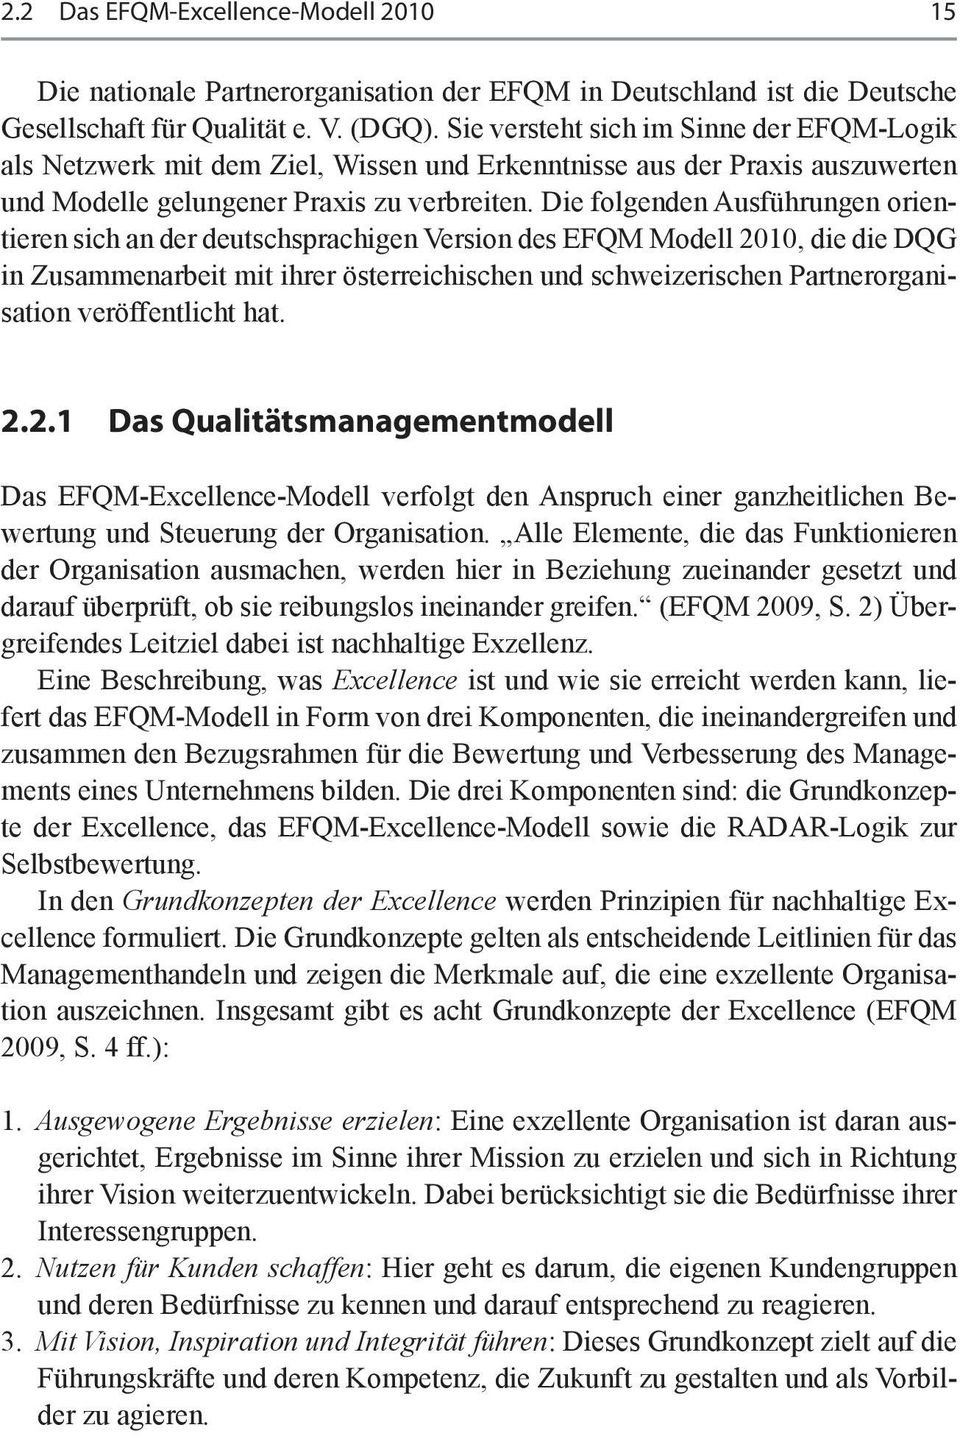 Die folgenden Ausführungen orientieren sich an der deutschsprachigen Version des EFQM Modell 2010, die die DQG in Zusammenarbeit mit ihrer österreichischen und schweizerischen Partnerorganisation